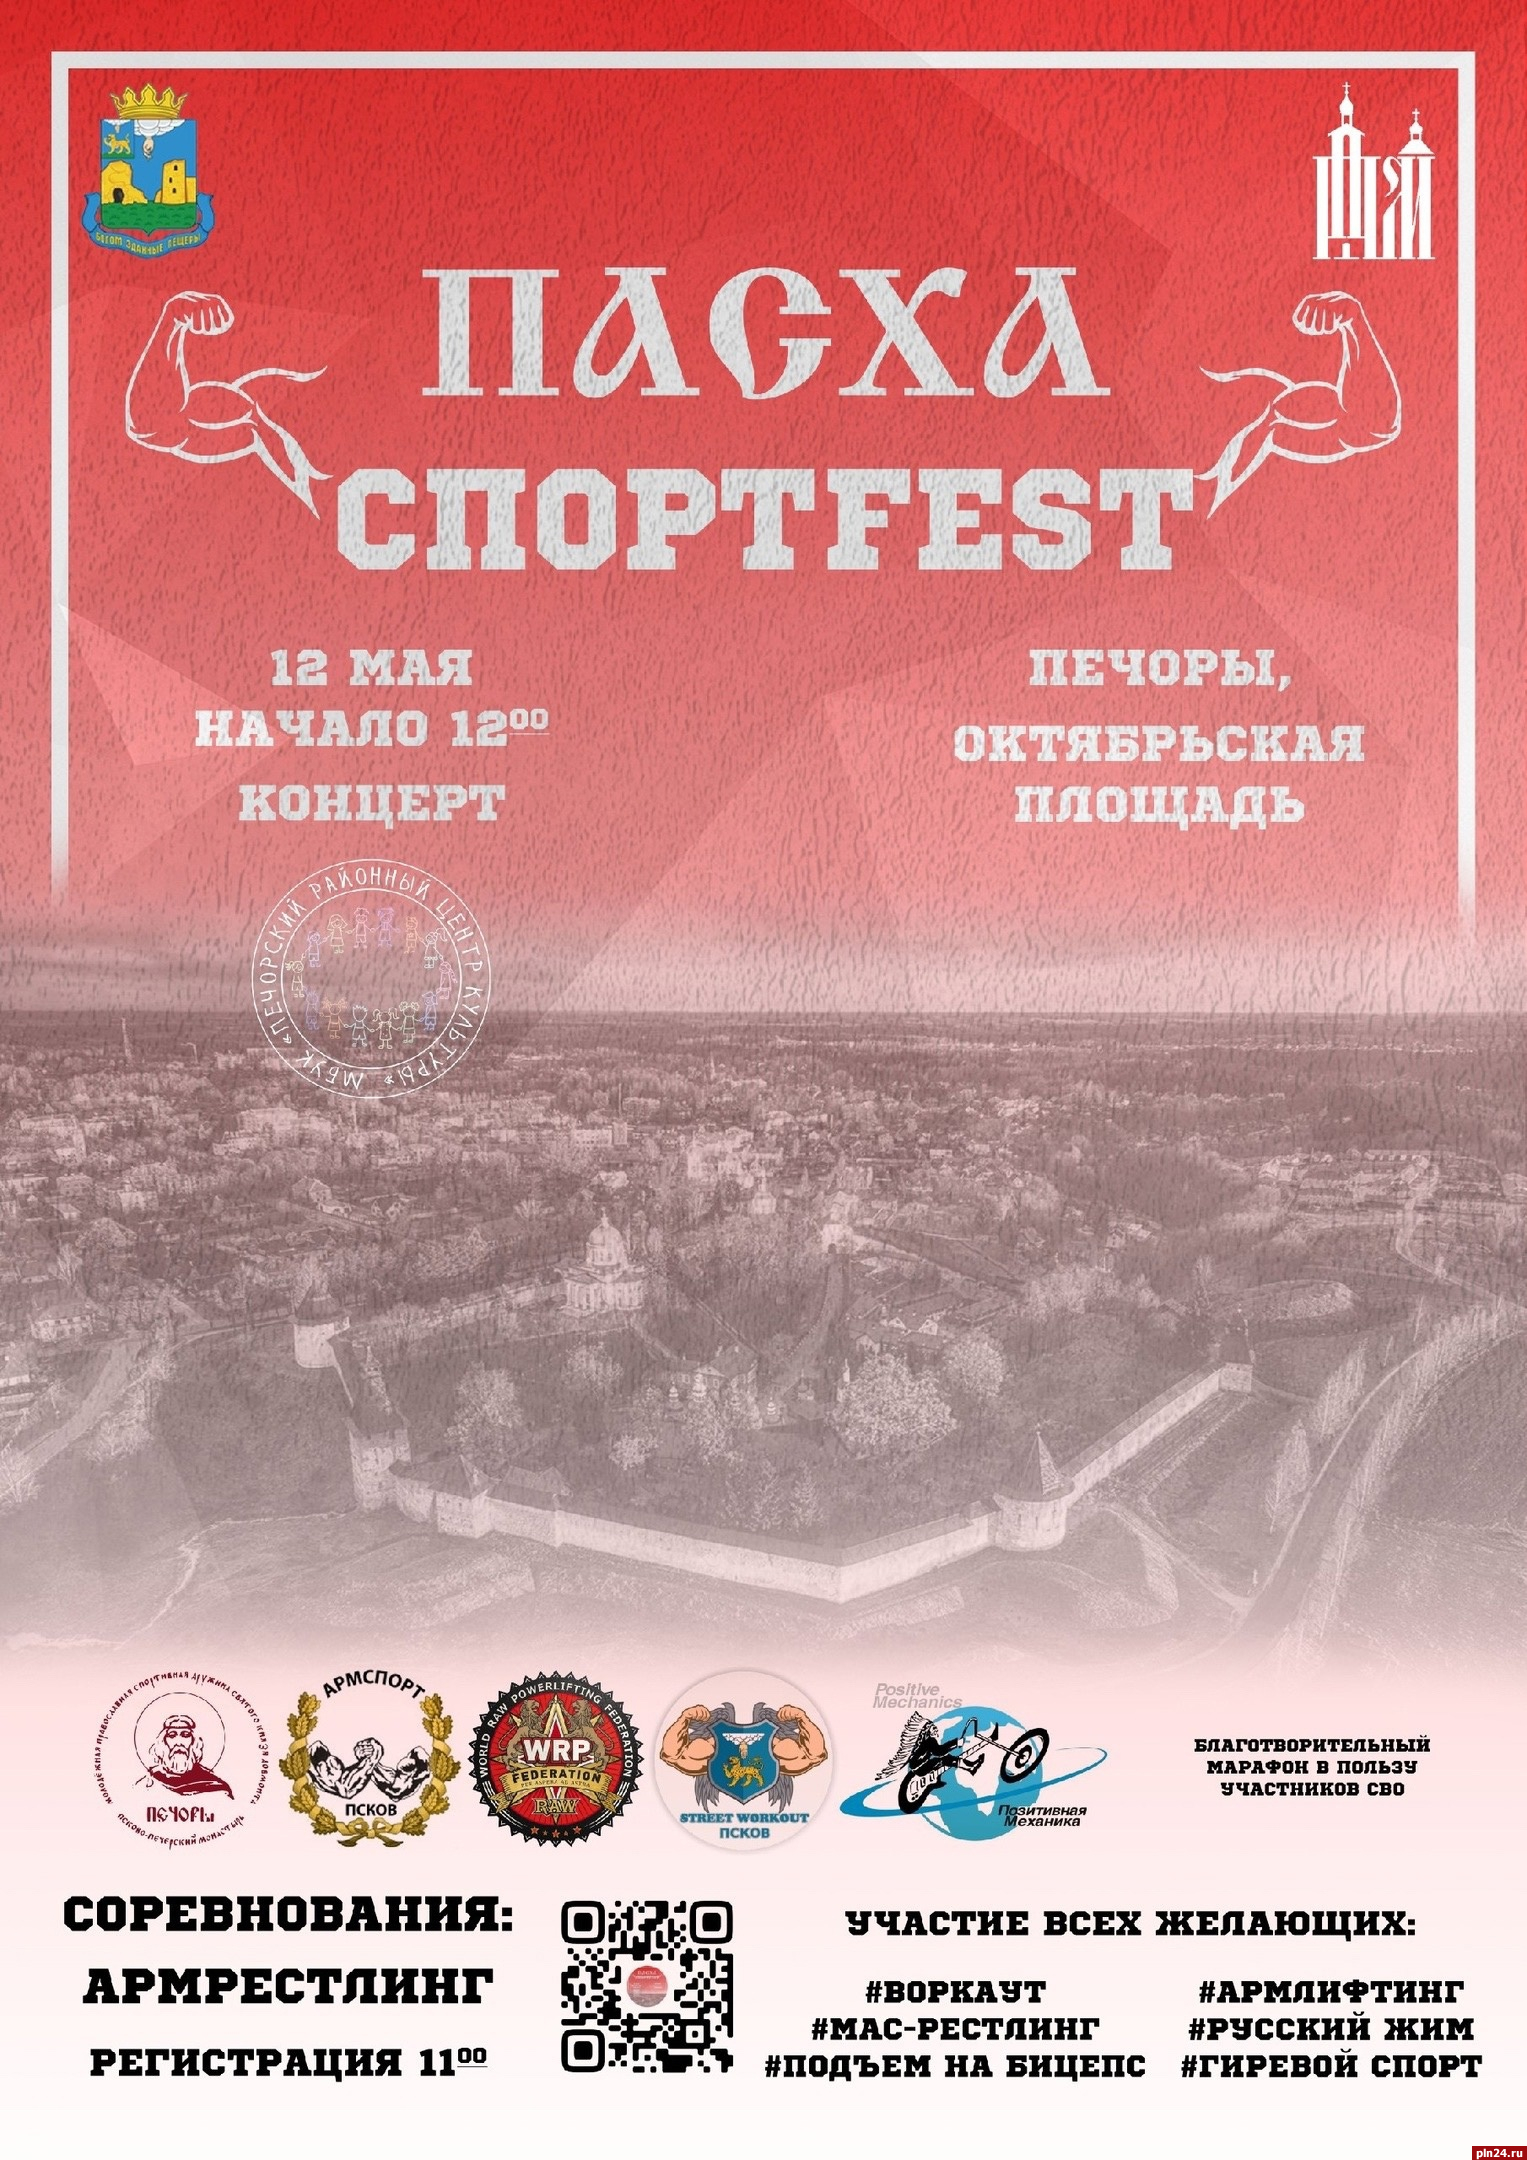 Фестиваль спорта «Пасха Спортfest» пройдет в Печорах 12 мая